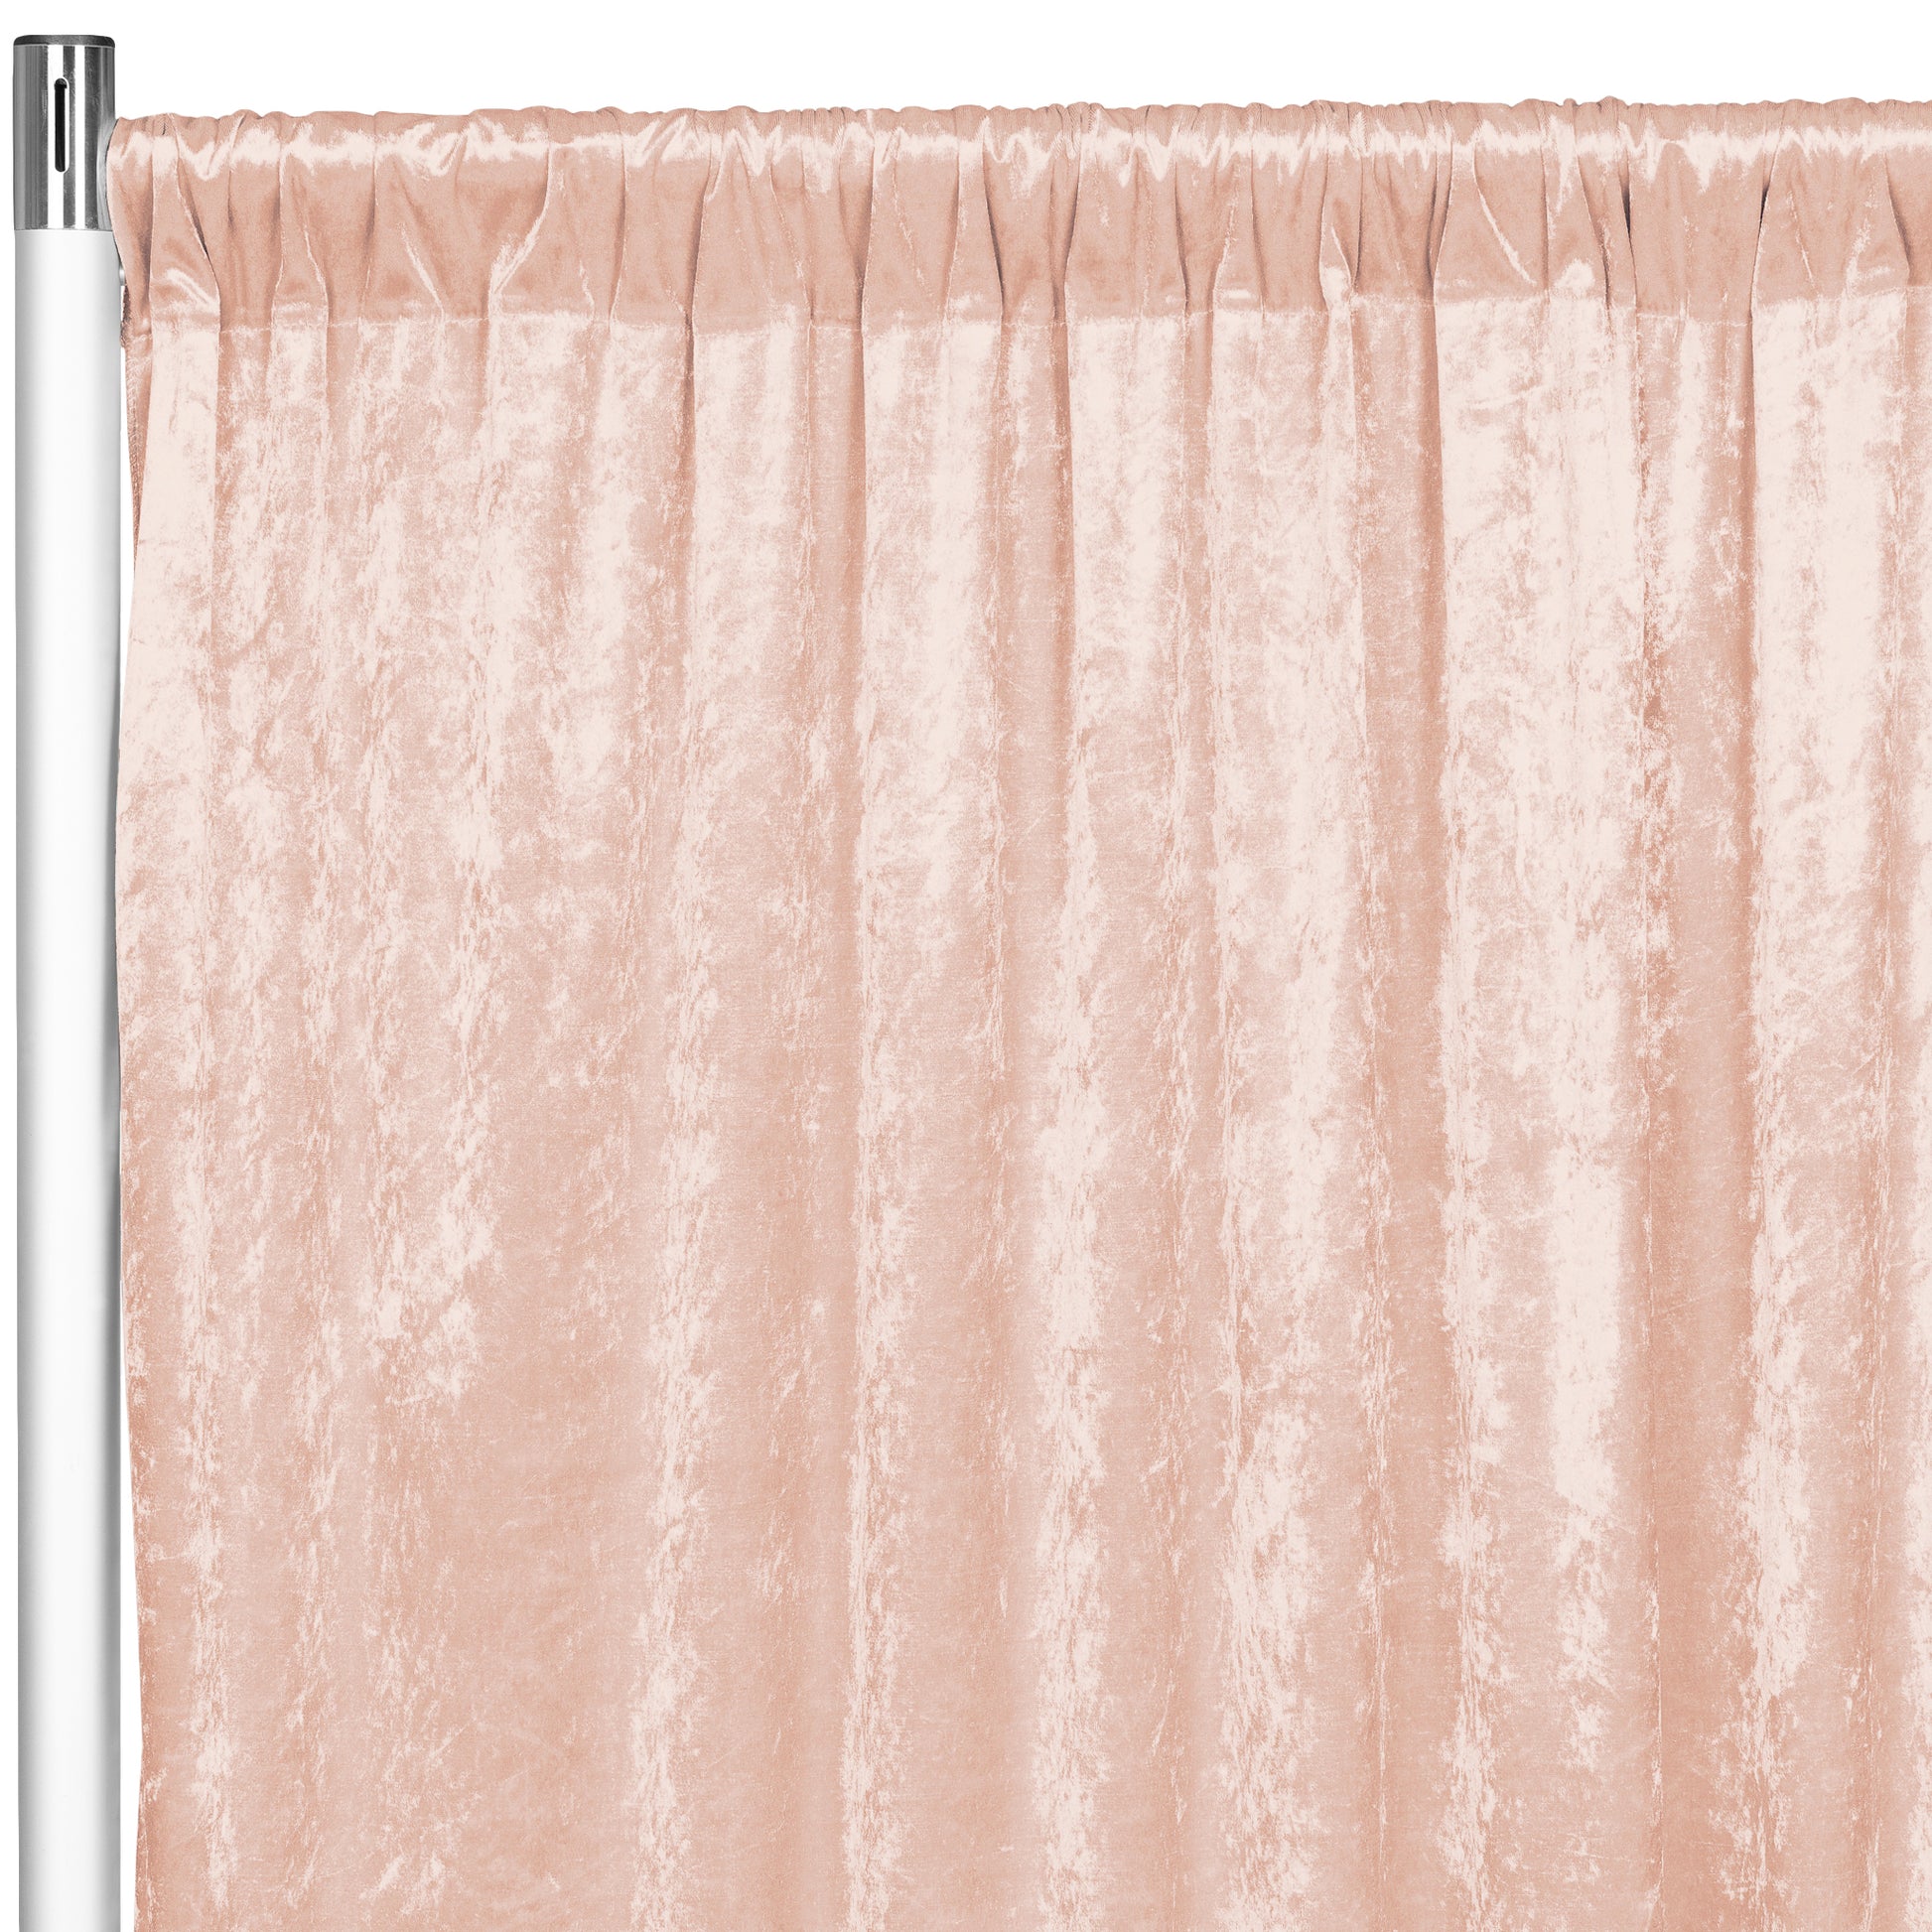 Velvet 10ft H x 52" W Drape/Backdrop Curtain Panel - Blush/Rose Gold - CV Linens